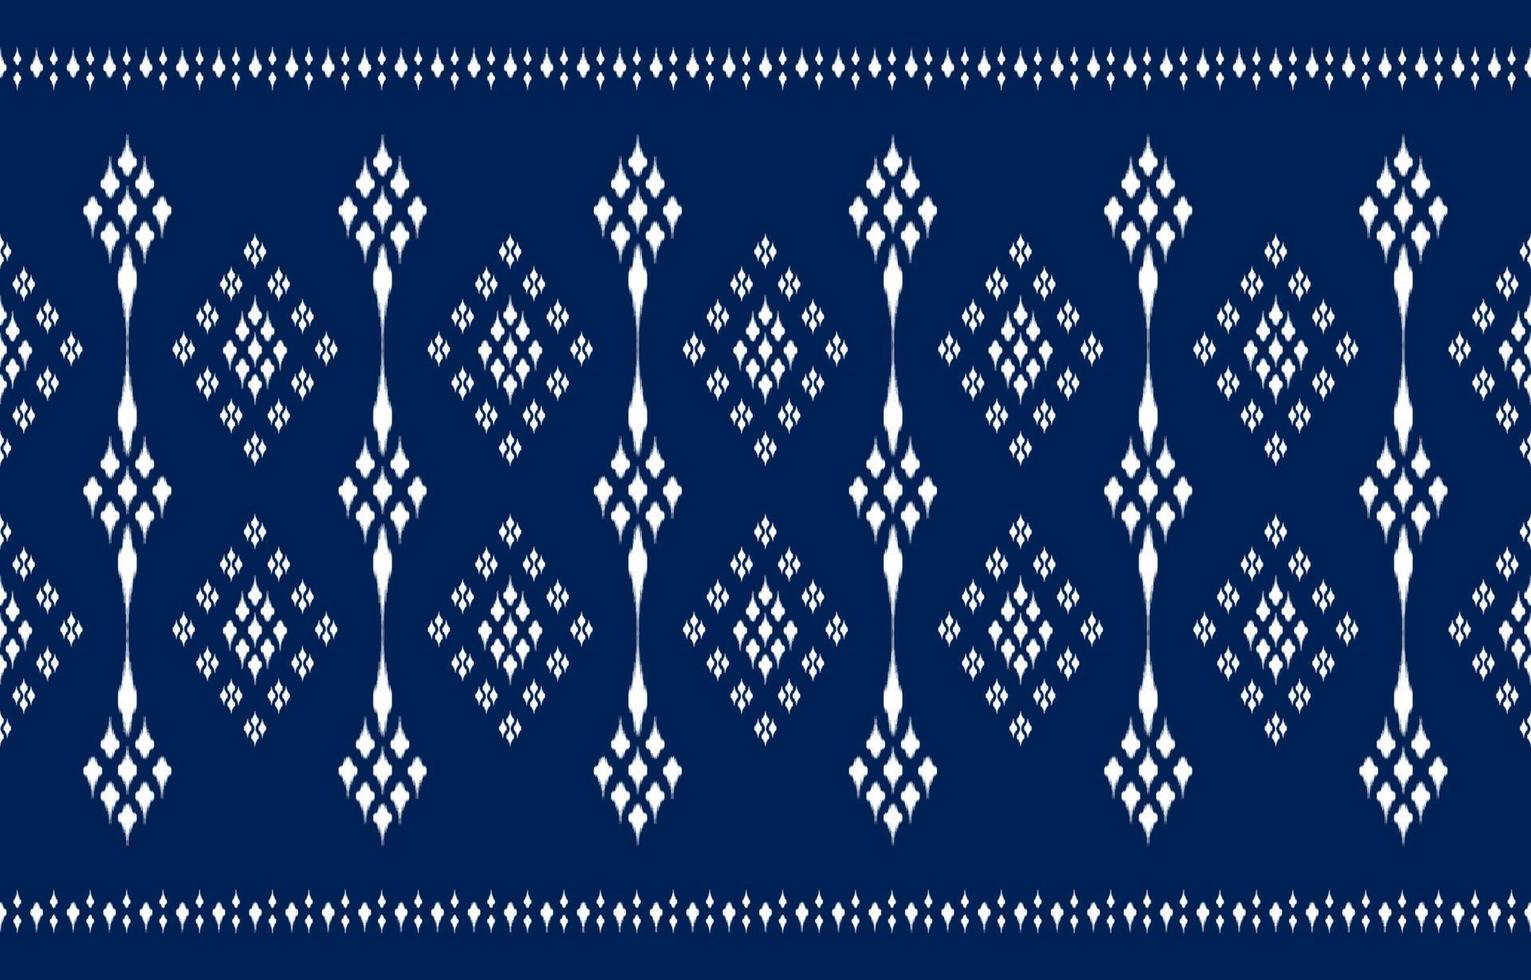 mooi ikat etnisch ontwerp. naadloze polka dot pastel schattig patroon in tribal, folk borduurwerk abstracte kunst. aztec art ornament print.design voor tapijt, behang, kleding vector